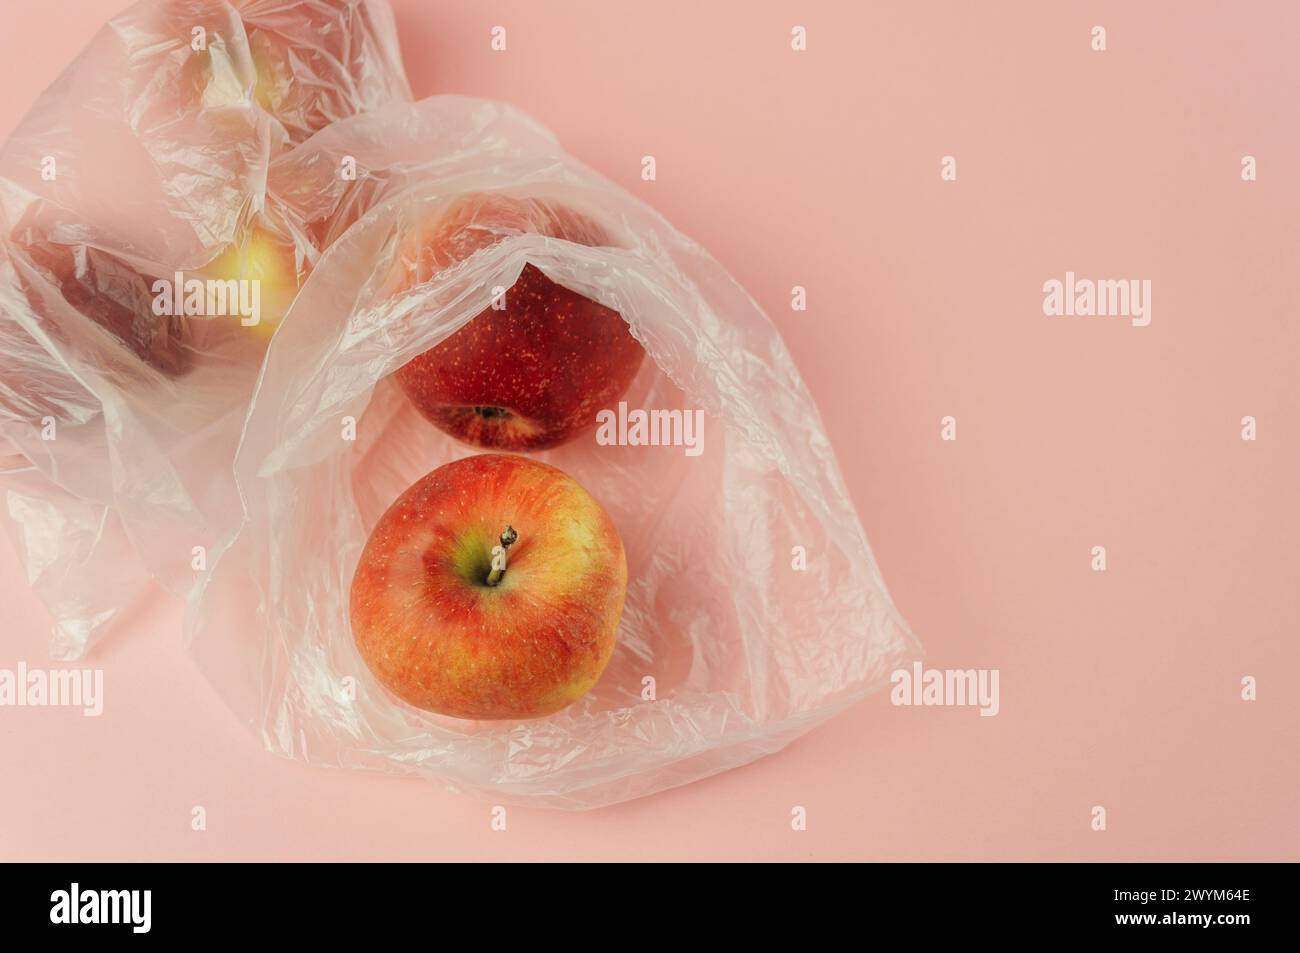 Un sac en plastique avec une pomme rouge à l'intérieur. Le sac est placé sur un fond rose. Concept de gaspillage et de préoccupation environnementale, comme le sac en plastique i Banque D'Images